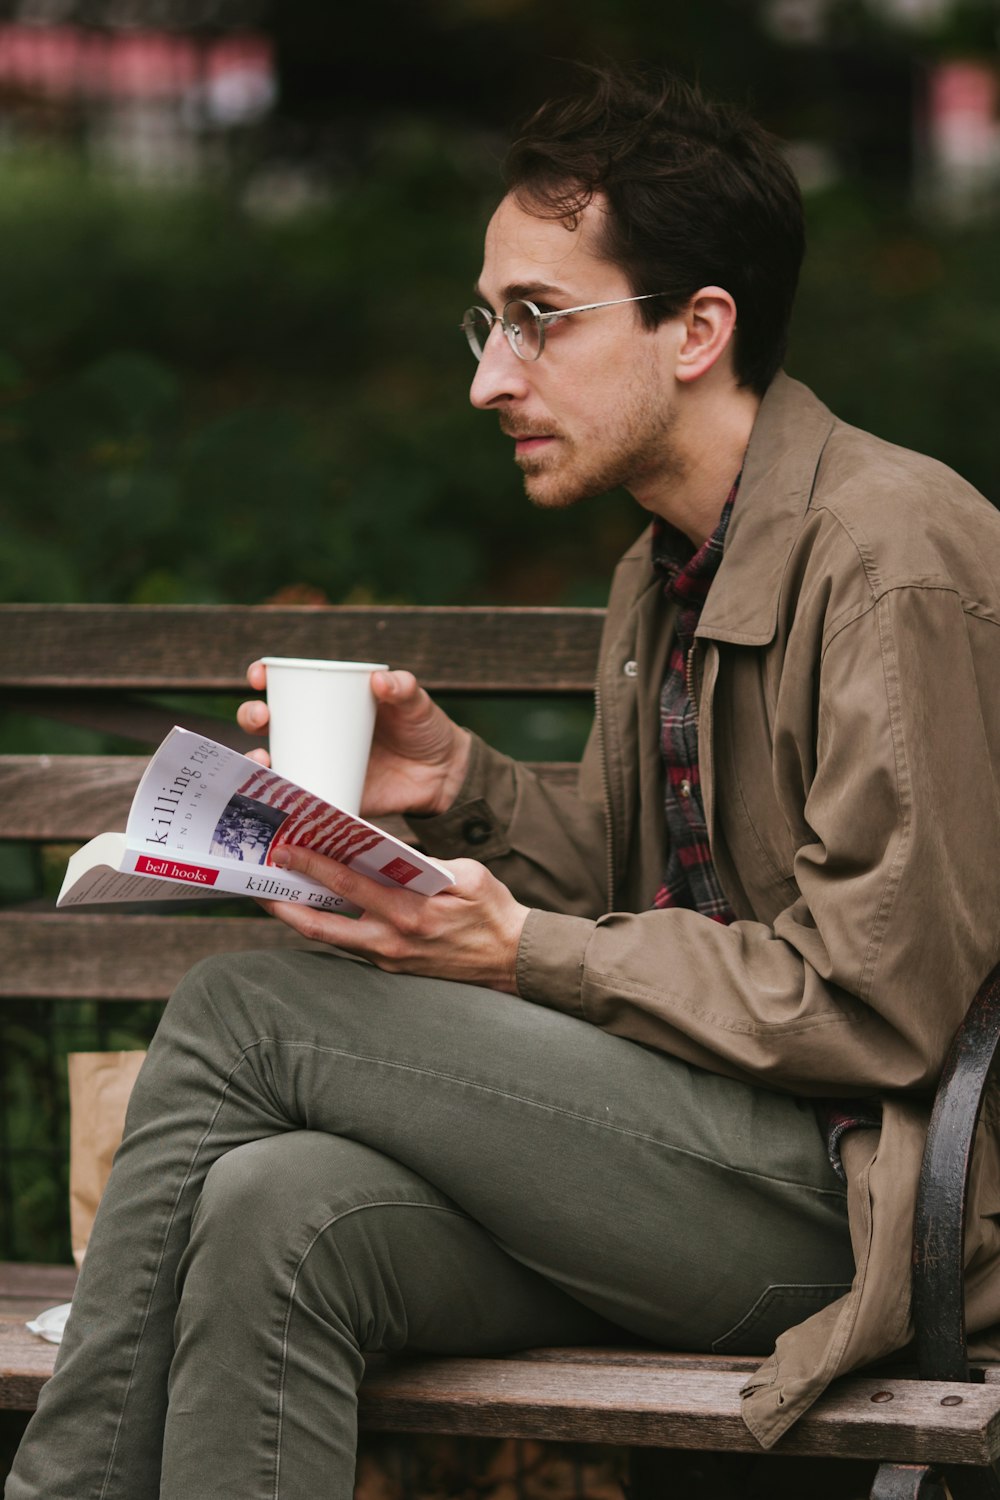 Mann in brauner Lederjacke und grauer Jeans sitzt auf Bank und liest Buch